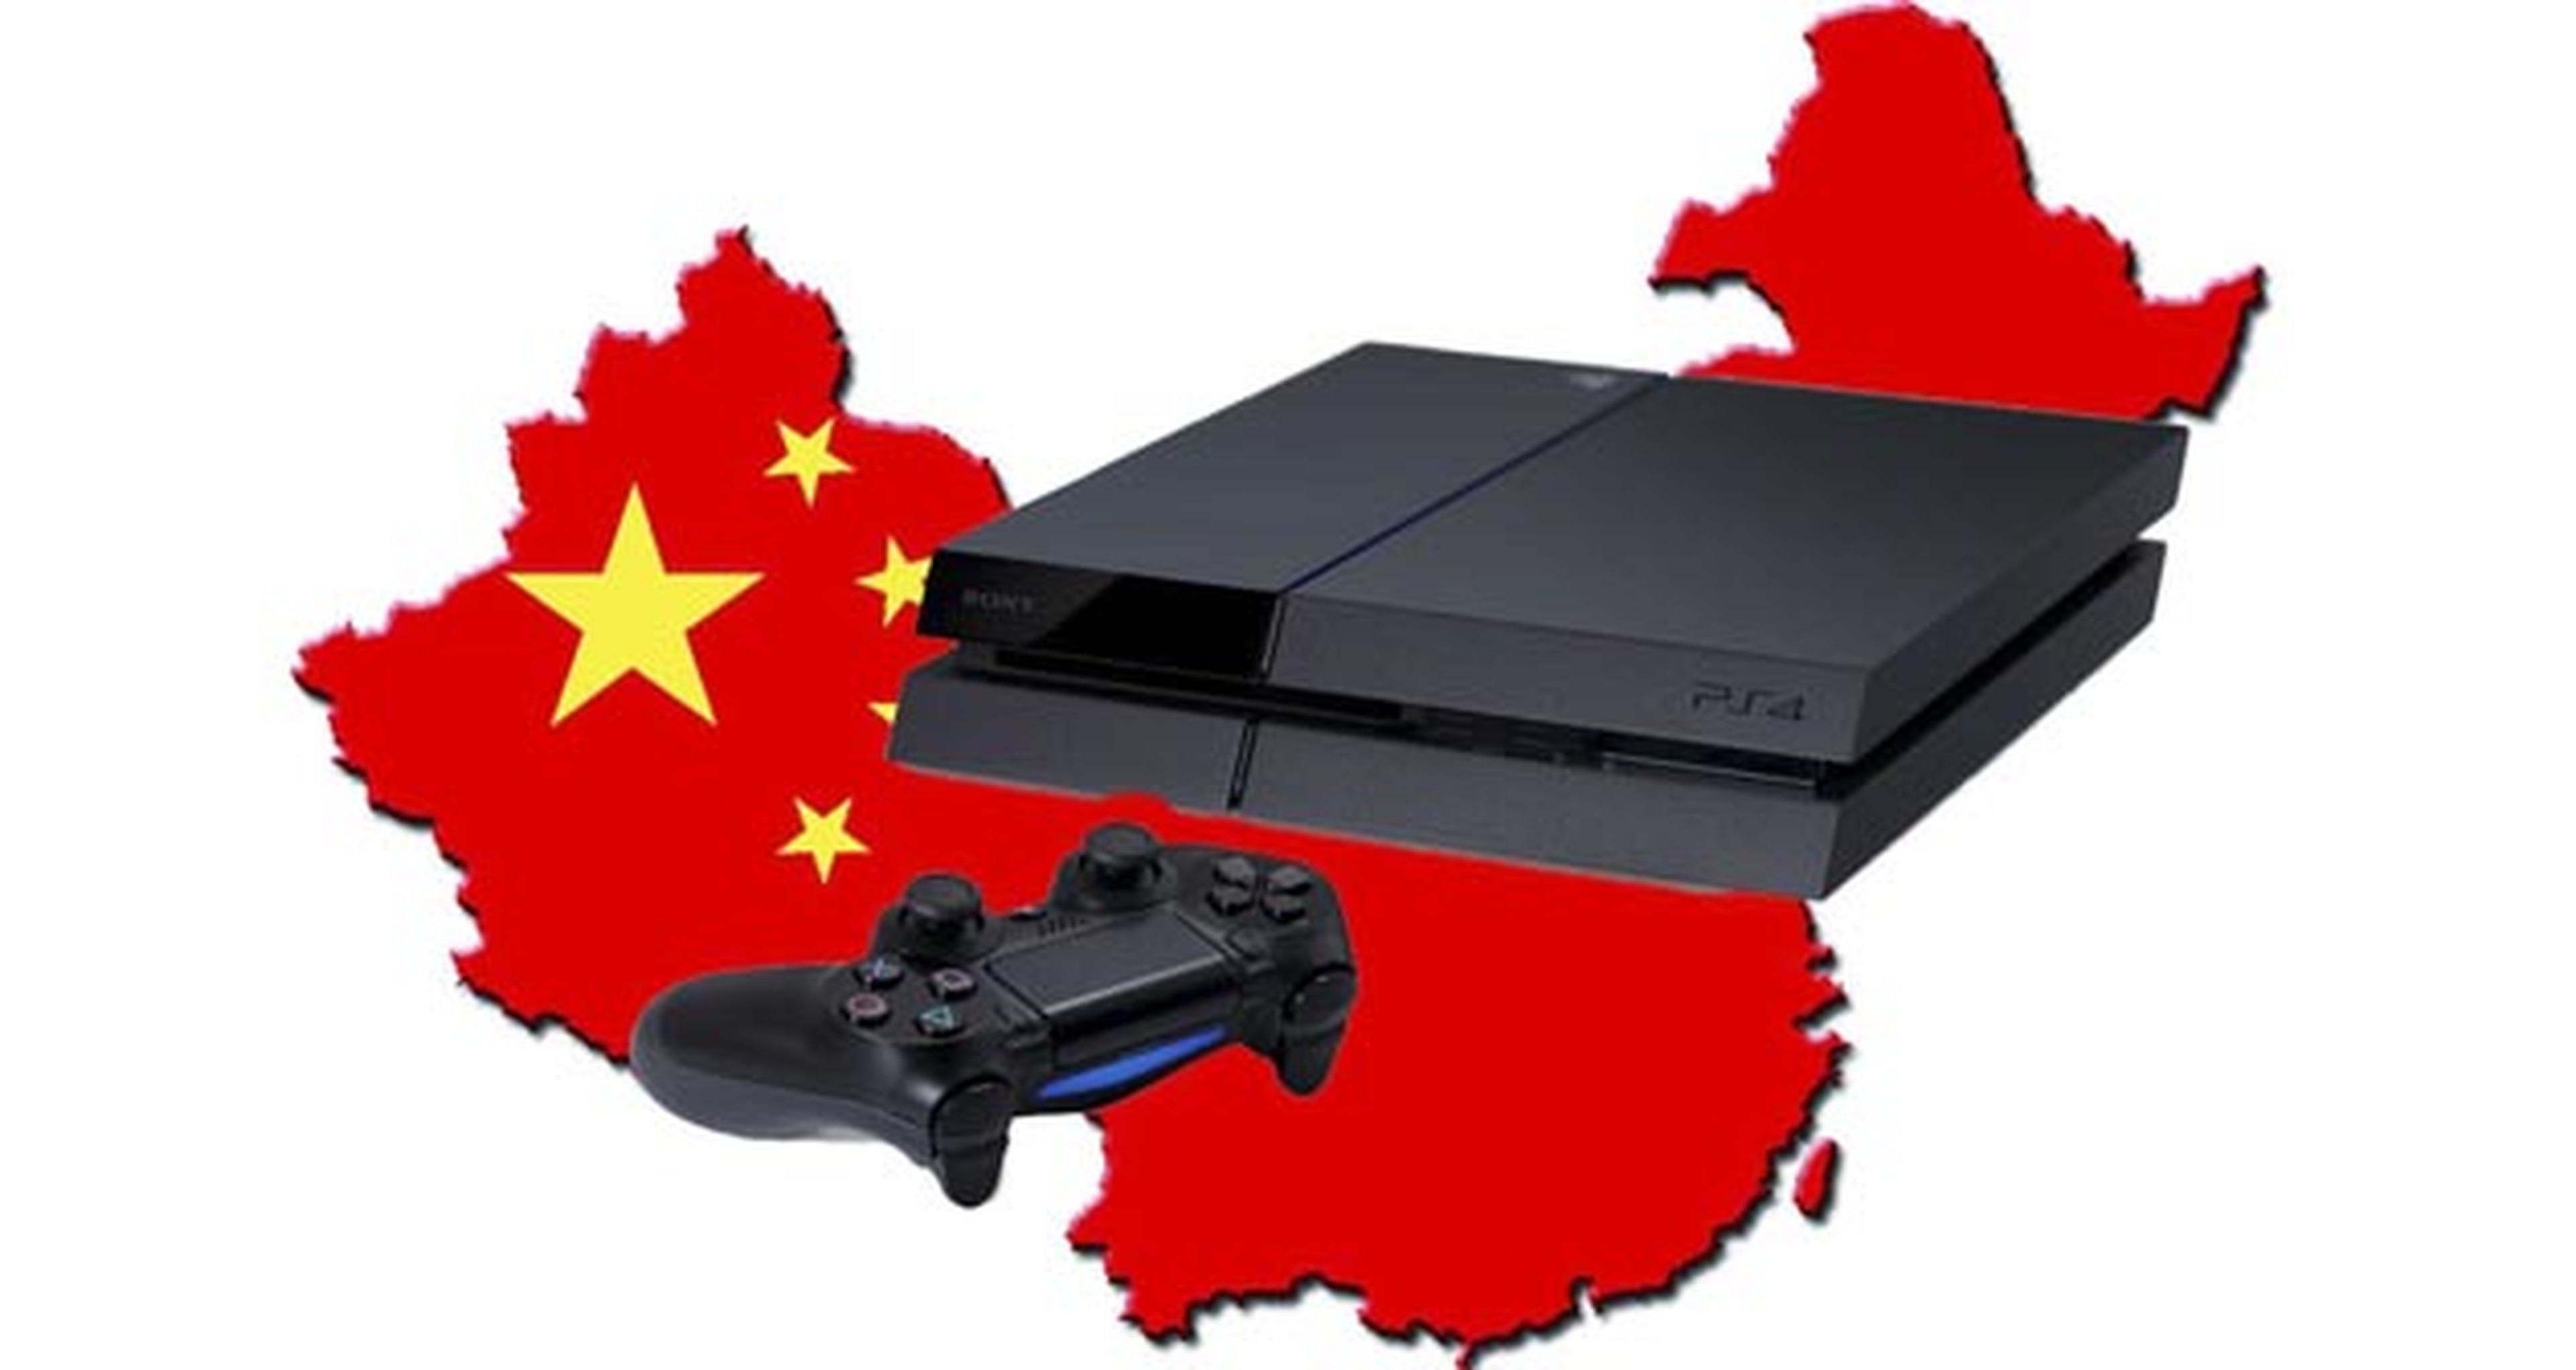 Sony planea lanzar sus consolas en China